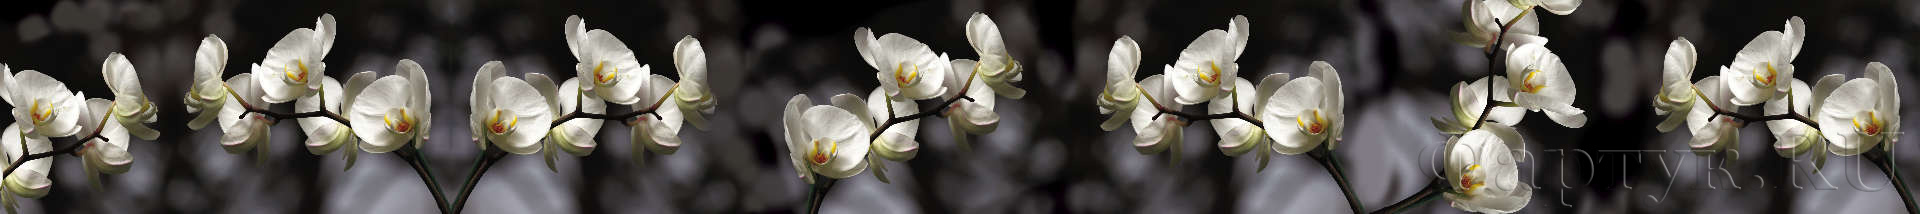 Ветки орхидеи